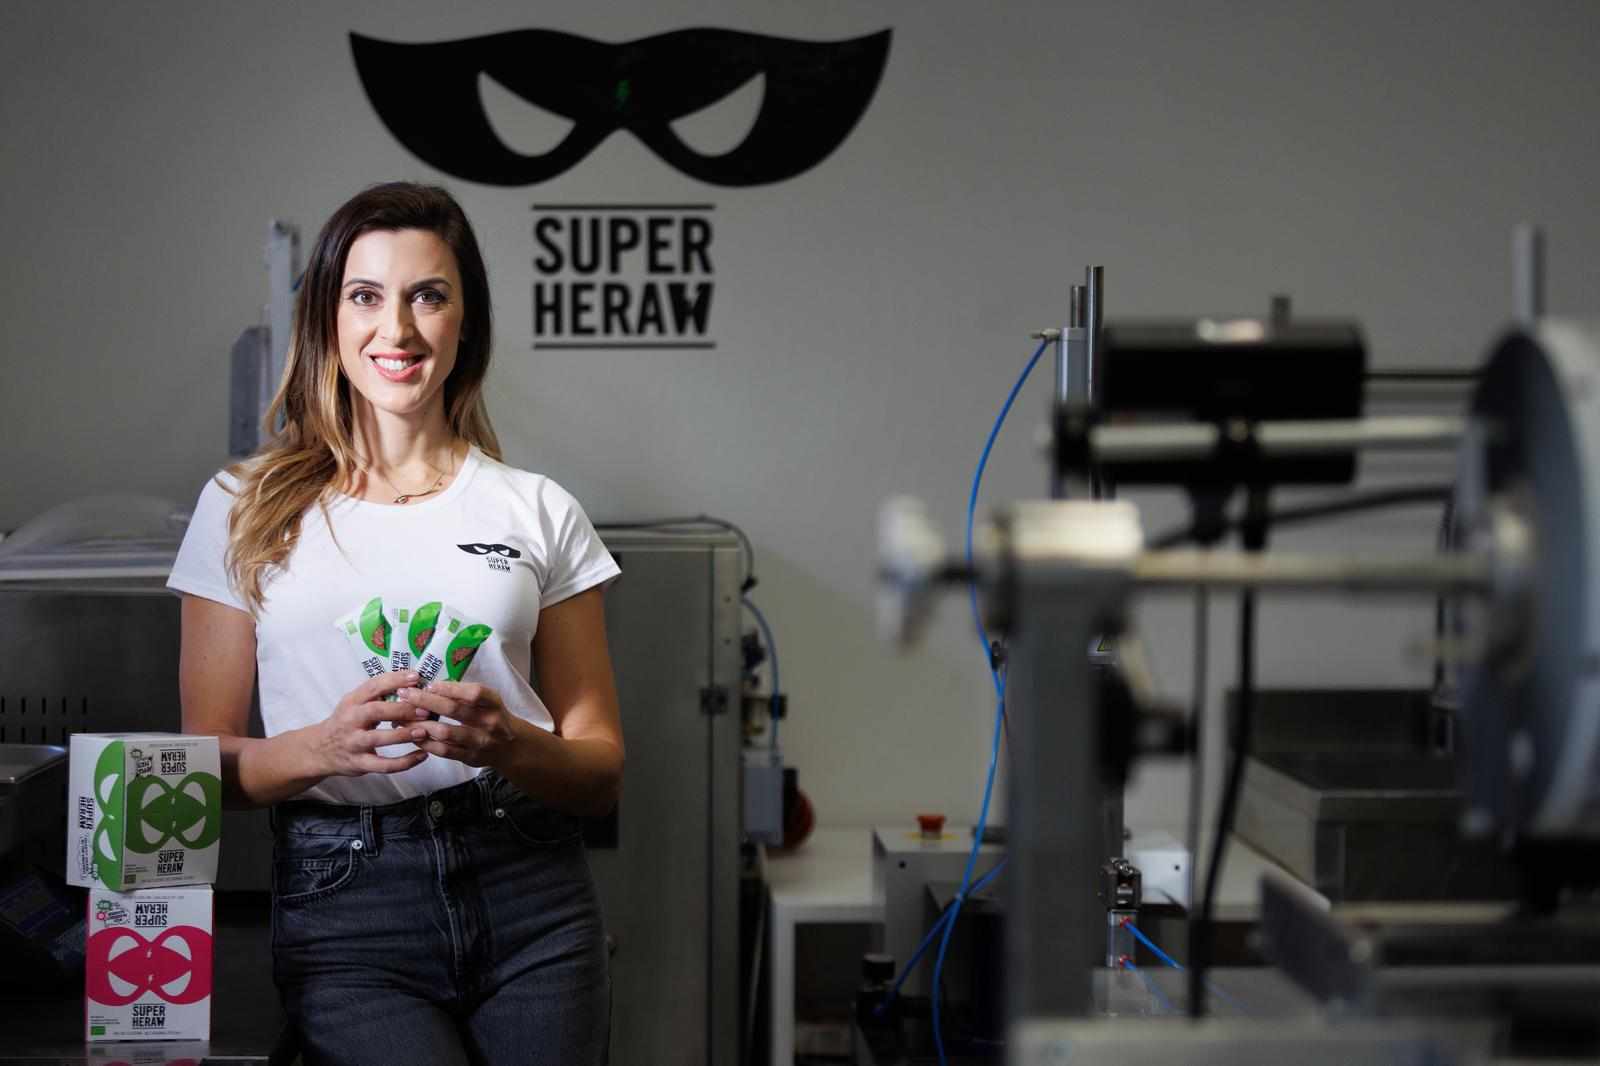 Lady Boss Tijana Božović Galjanić: "Sretna sam kada vidim da netko iz torbe uzima našu Superheraw pločicu!"